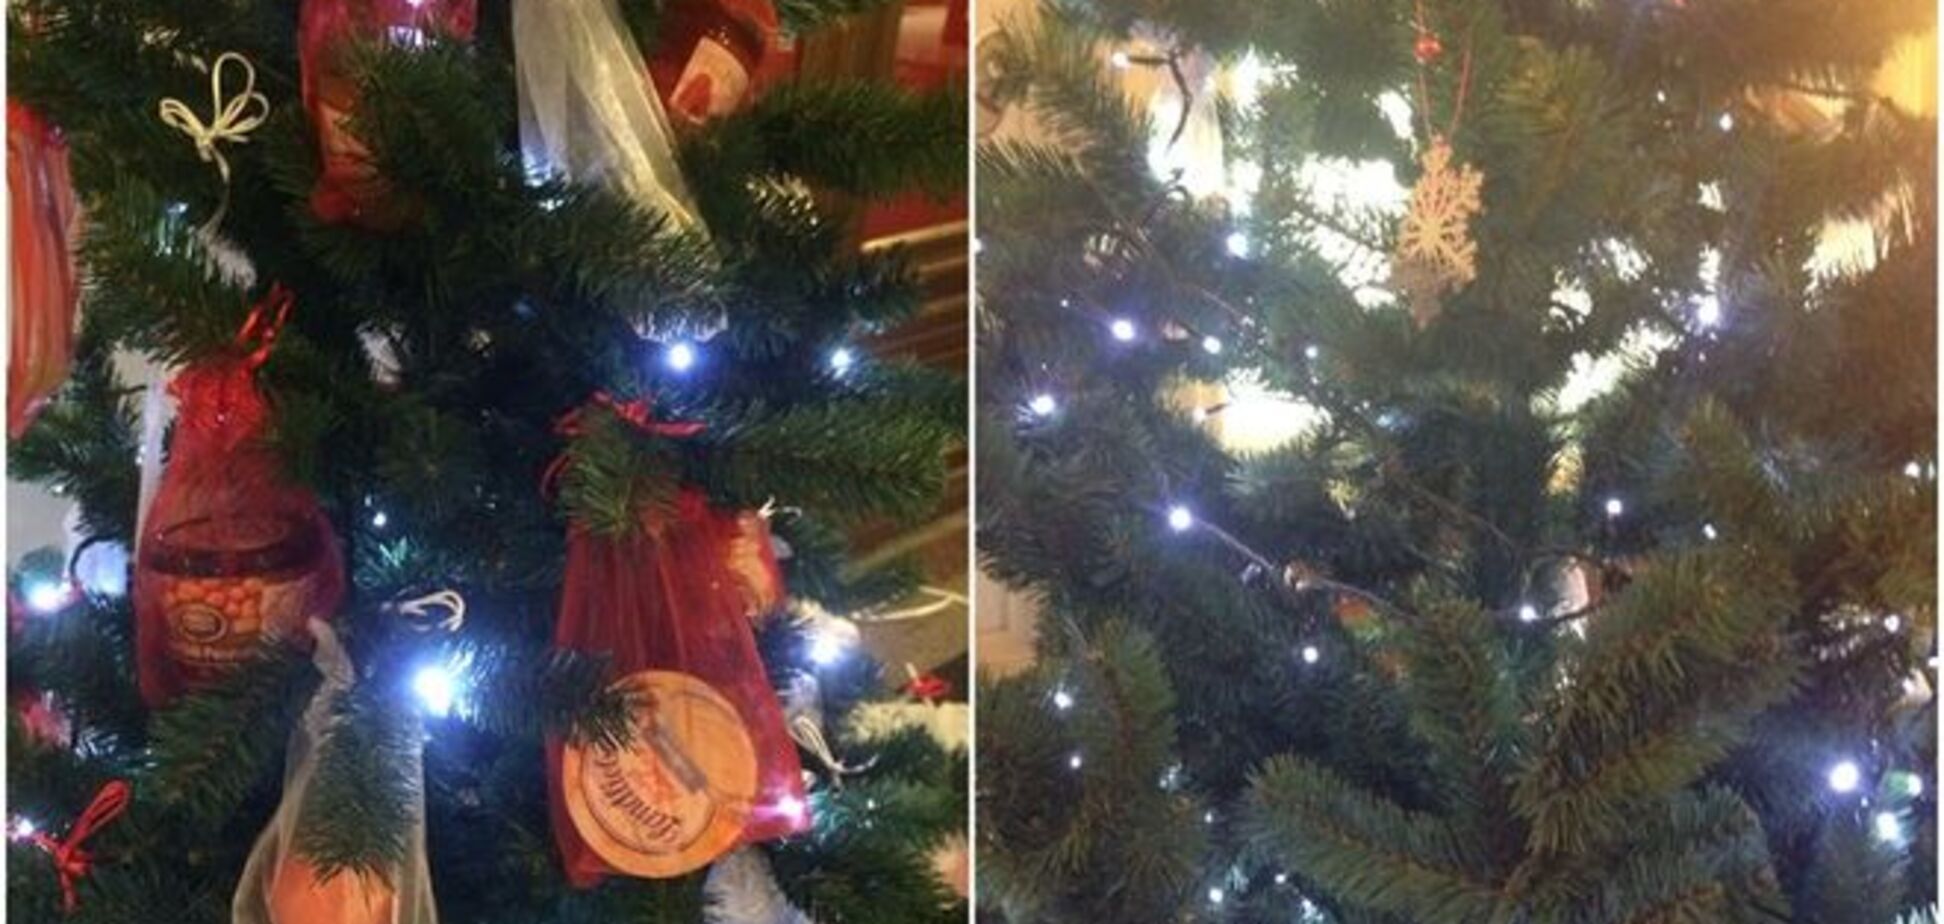 В московском ГУМе посетители ободрали 'деликатесную' елку: фото вандализма